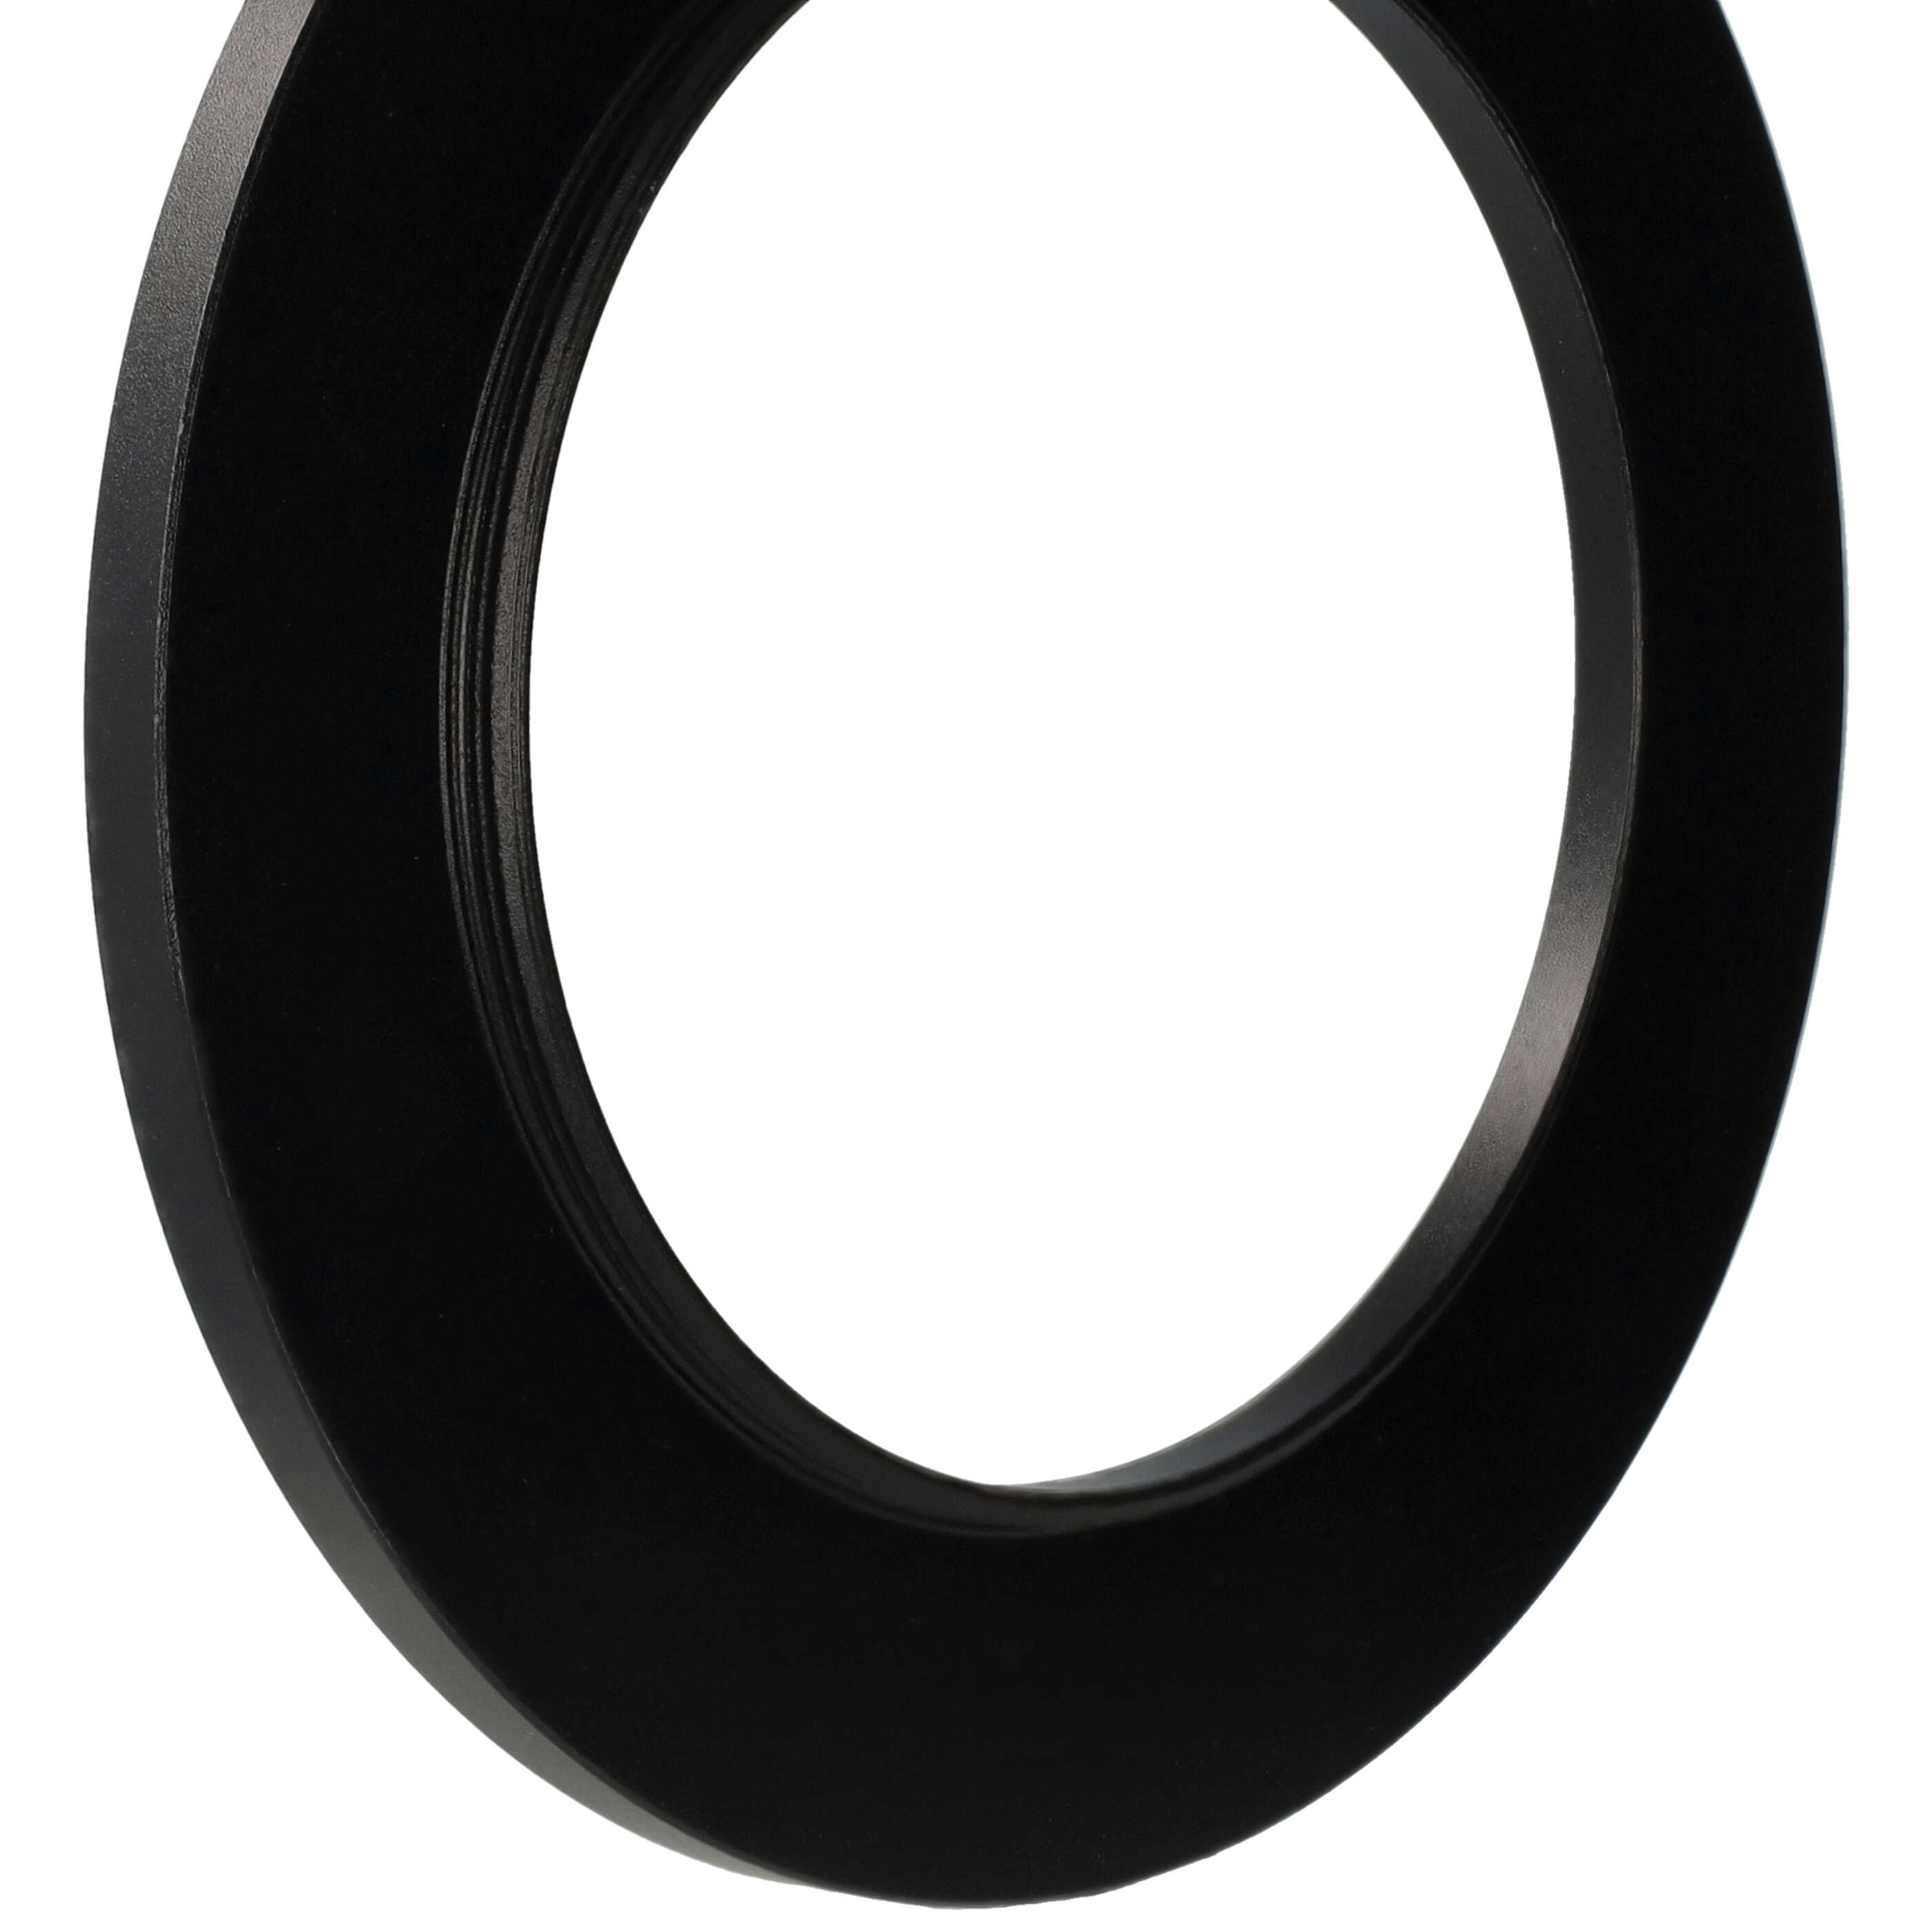 Step-Up-Ring Adapter 58 mm auf 82 mm passend für diverse Kamera-Objektive - Filteradapter